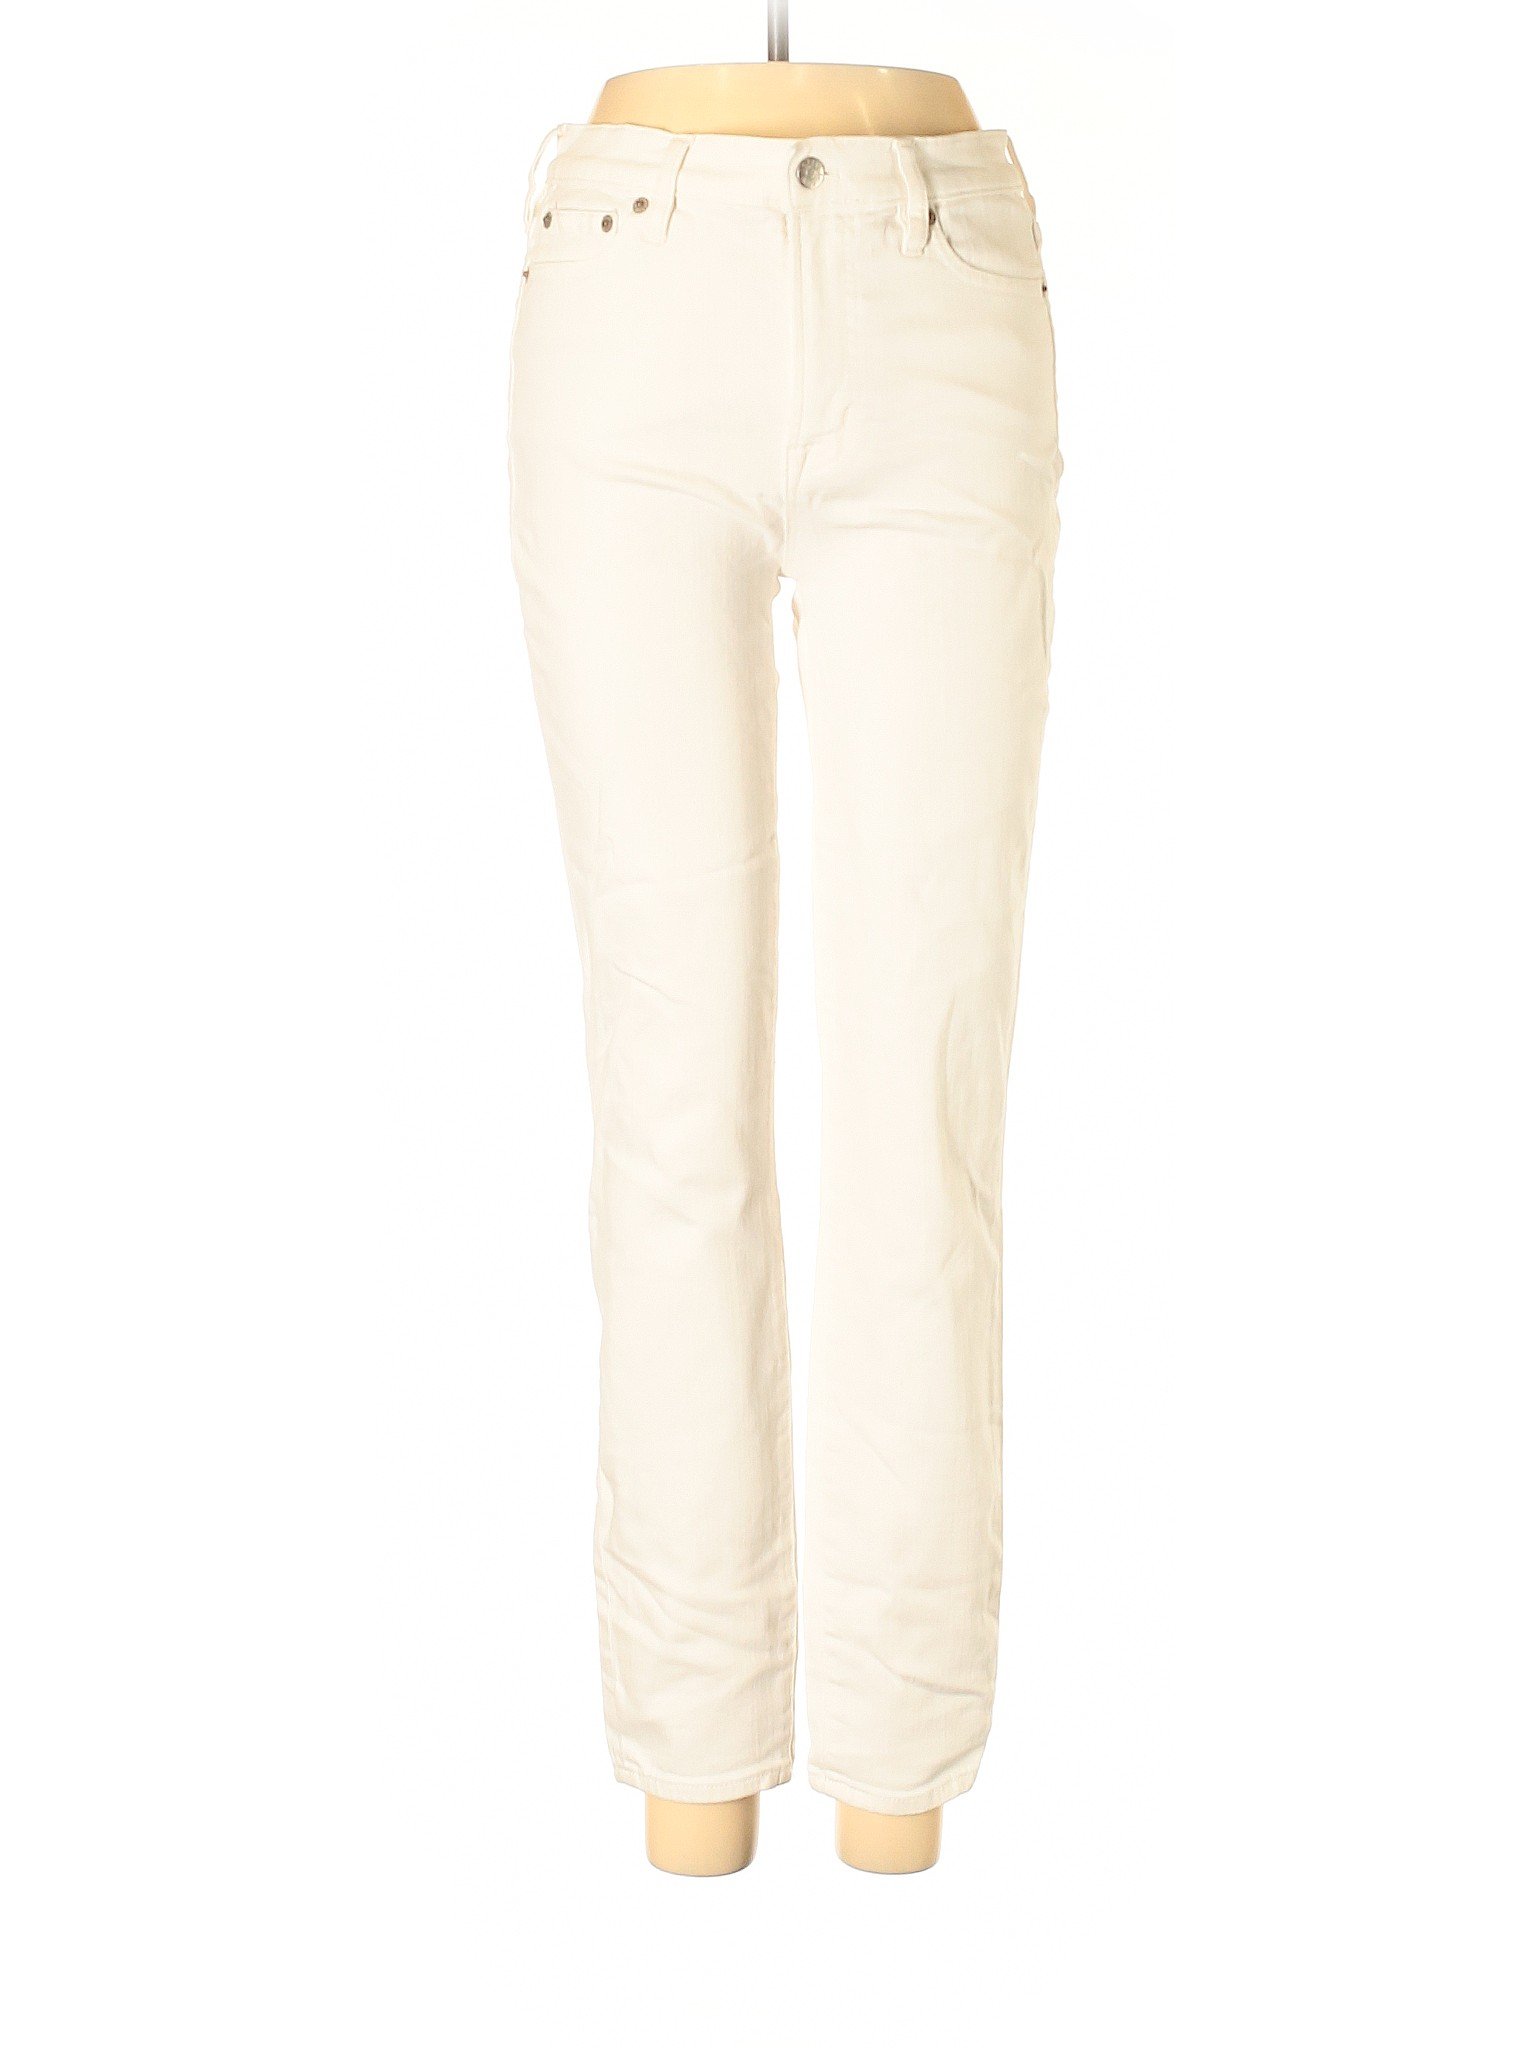 J.Crew Factory Store Women Ivory Jeans 27W | eBay